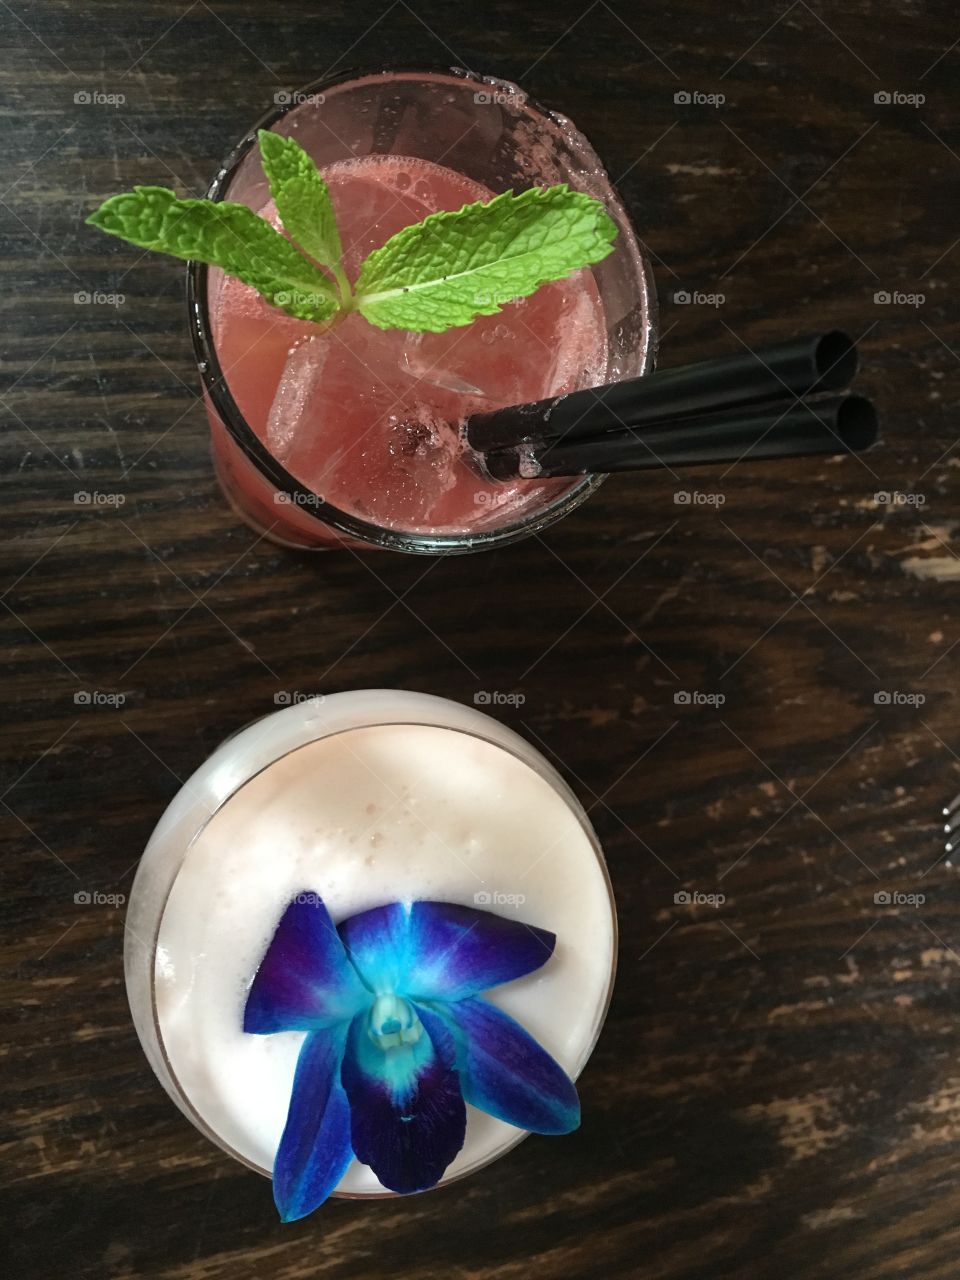 Fancy cocktails